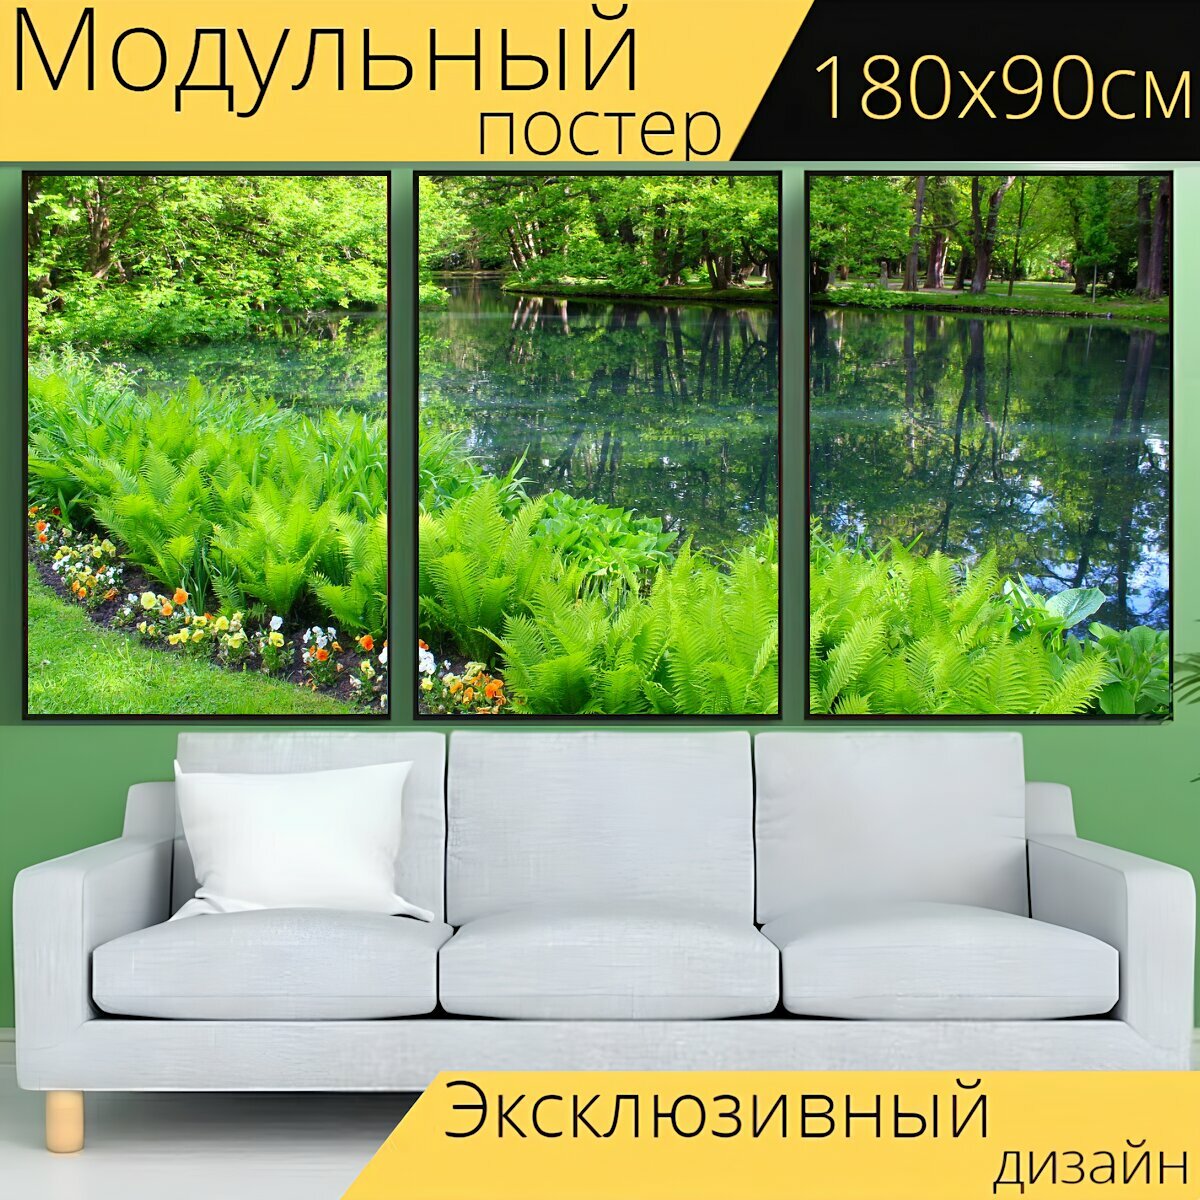 Модульный постер "Природа, растения, кусты" 180 x 90 см. для интерьера